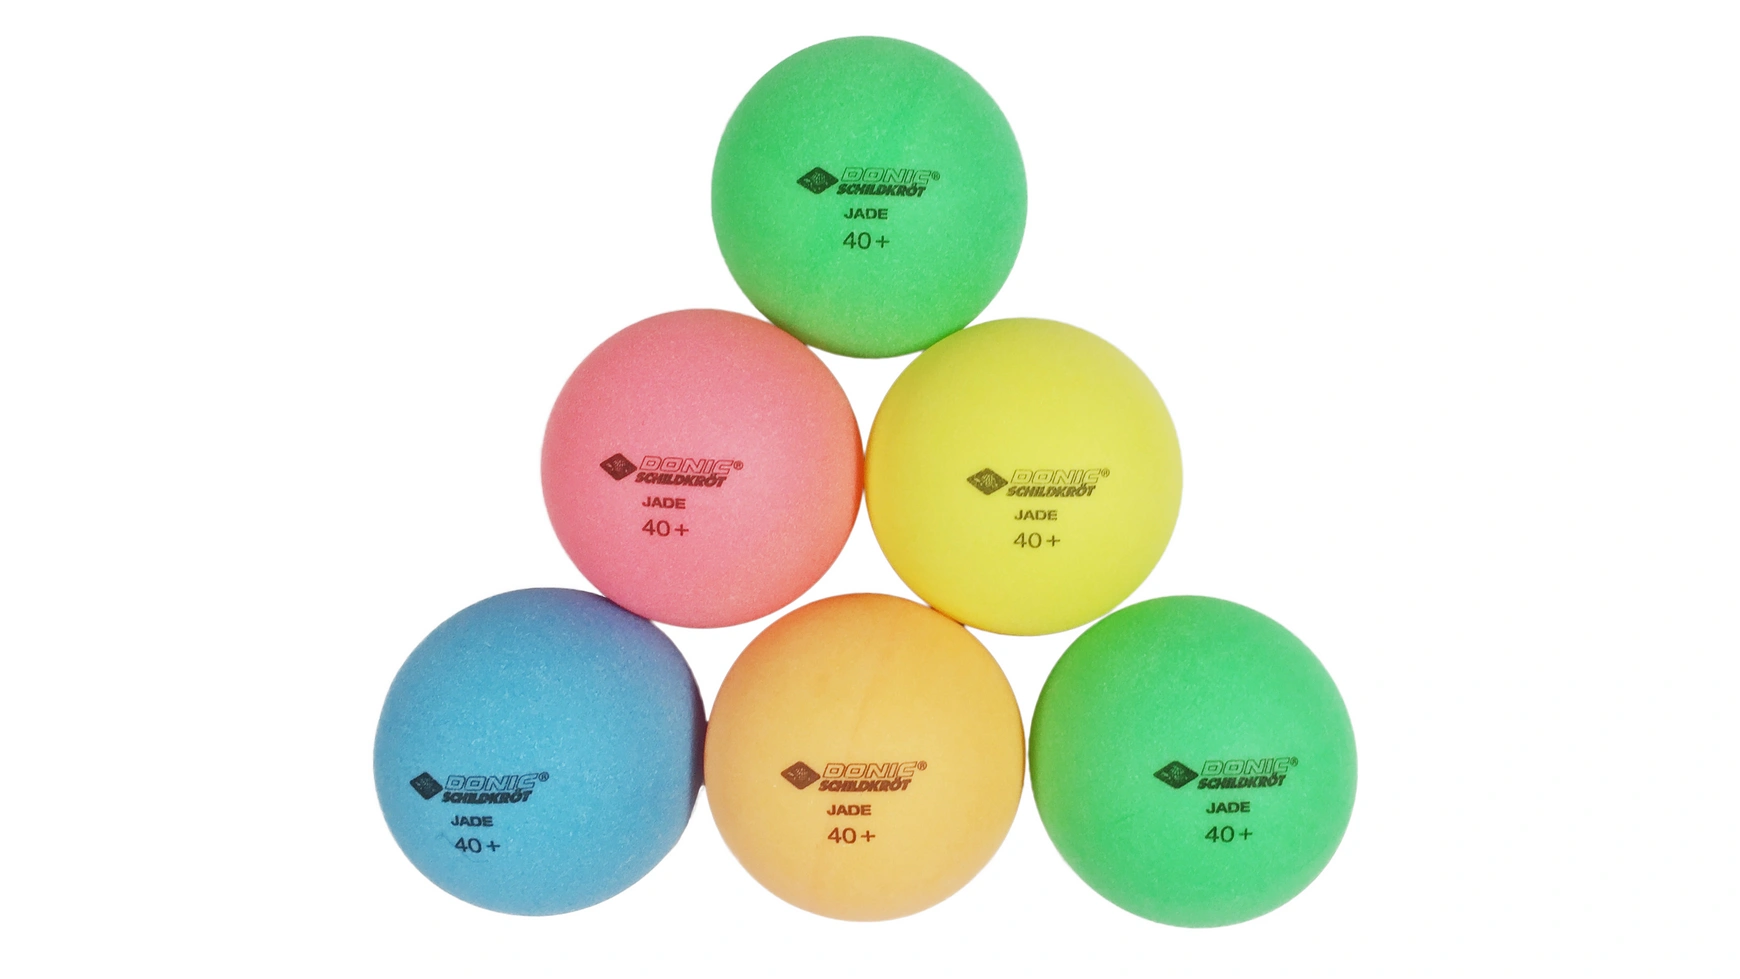 Donic Schildkröt Мяч для настольного тенниса Color Popps, 6 цветных шариков качества Poly 40+ donic schildkröt мяч для настольного тенниса jade качество поли 40 6 штук в блистере оранжевый